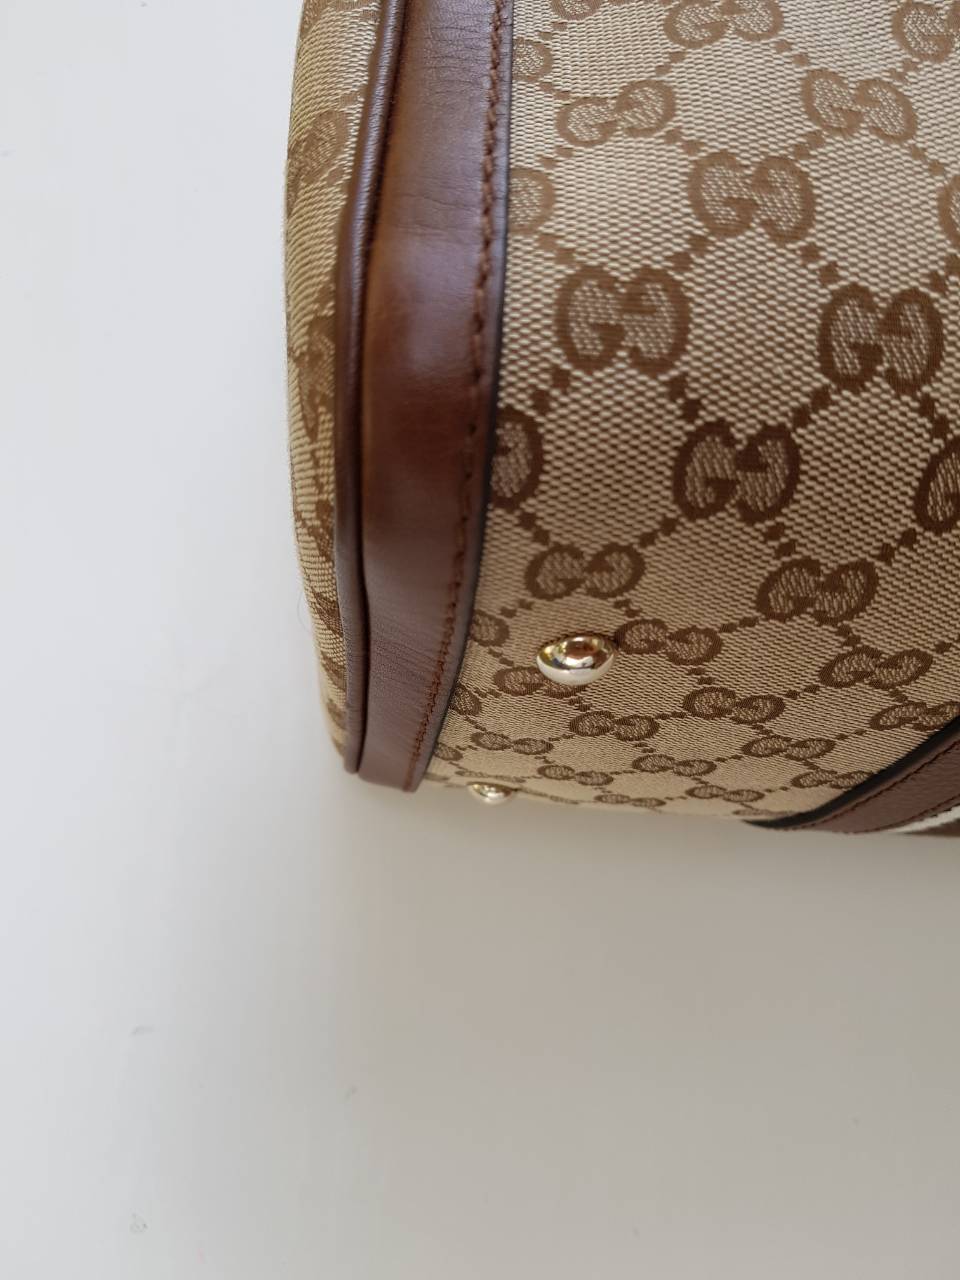 Authentic Gucci Boston bag